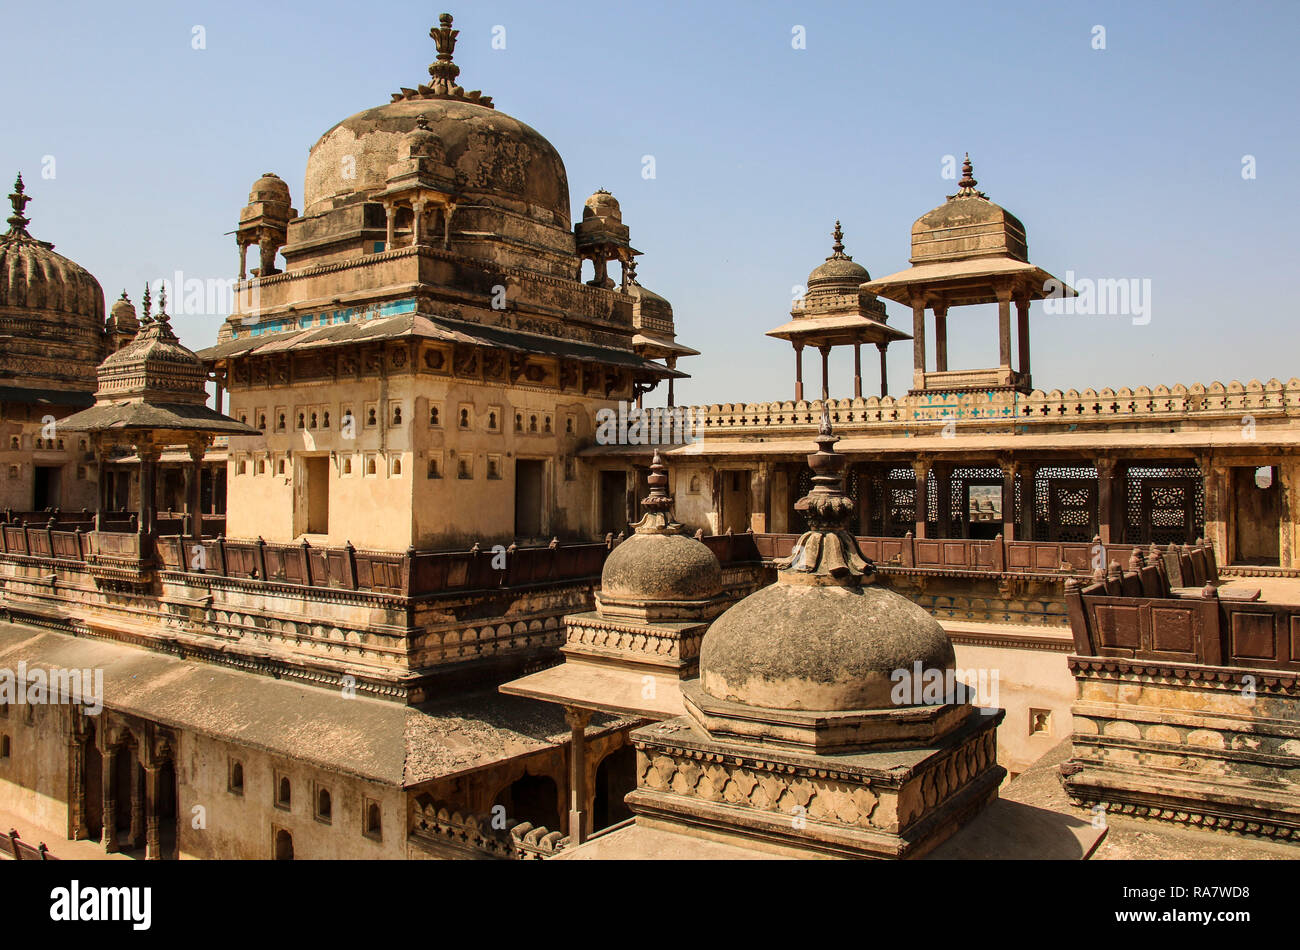 Orchha fort (Jahangir Mahal), Orchha, Madhya Pradesh, India Stock Photo